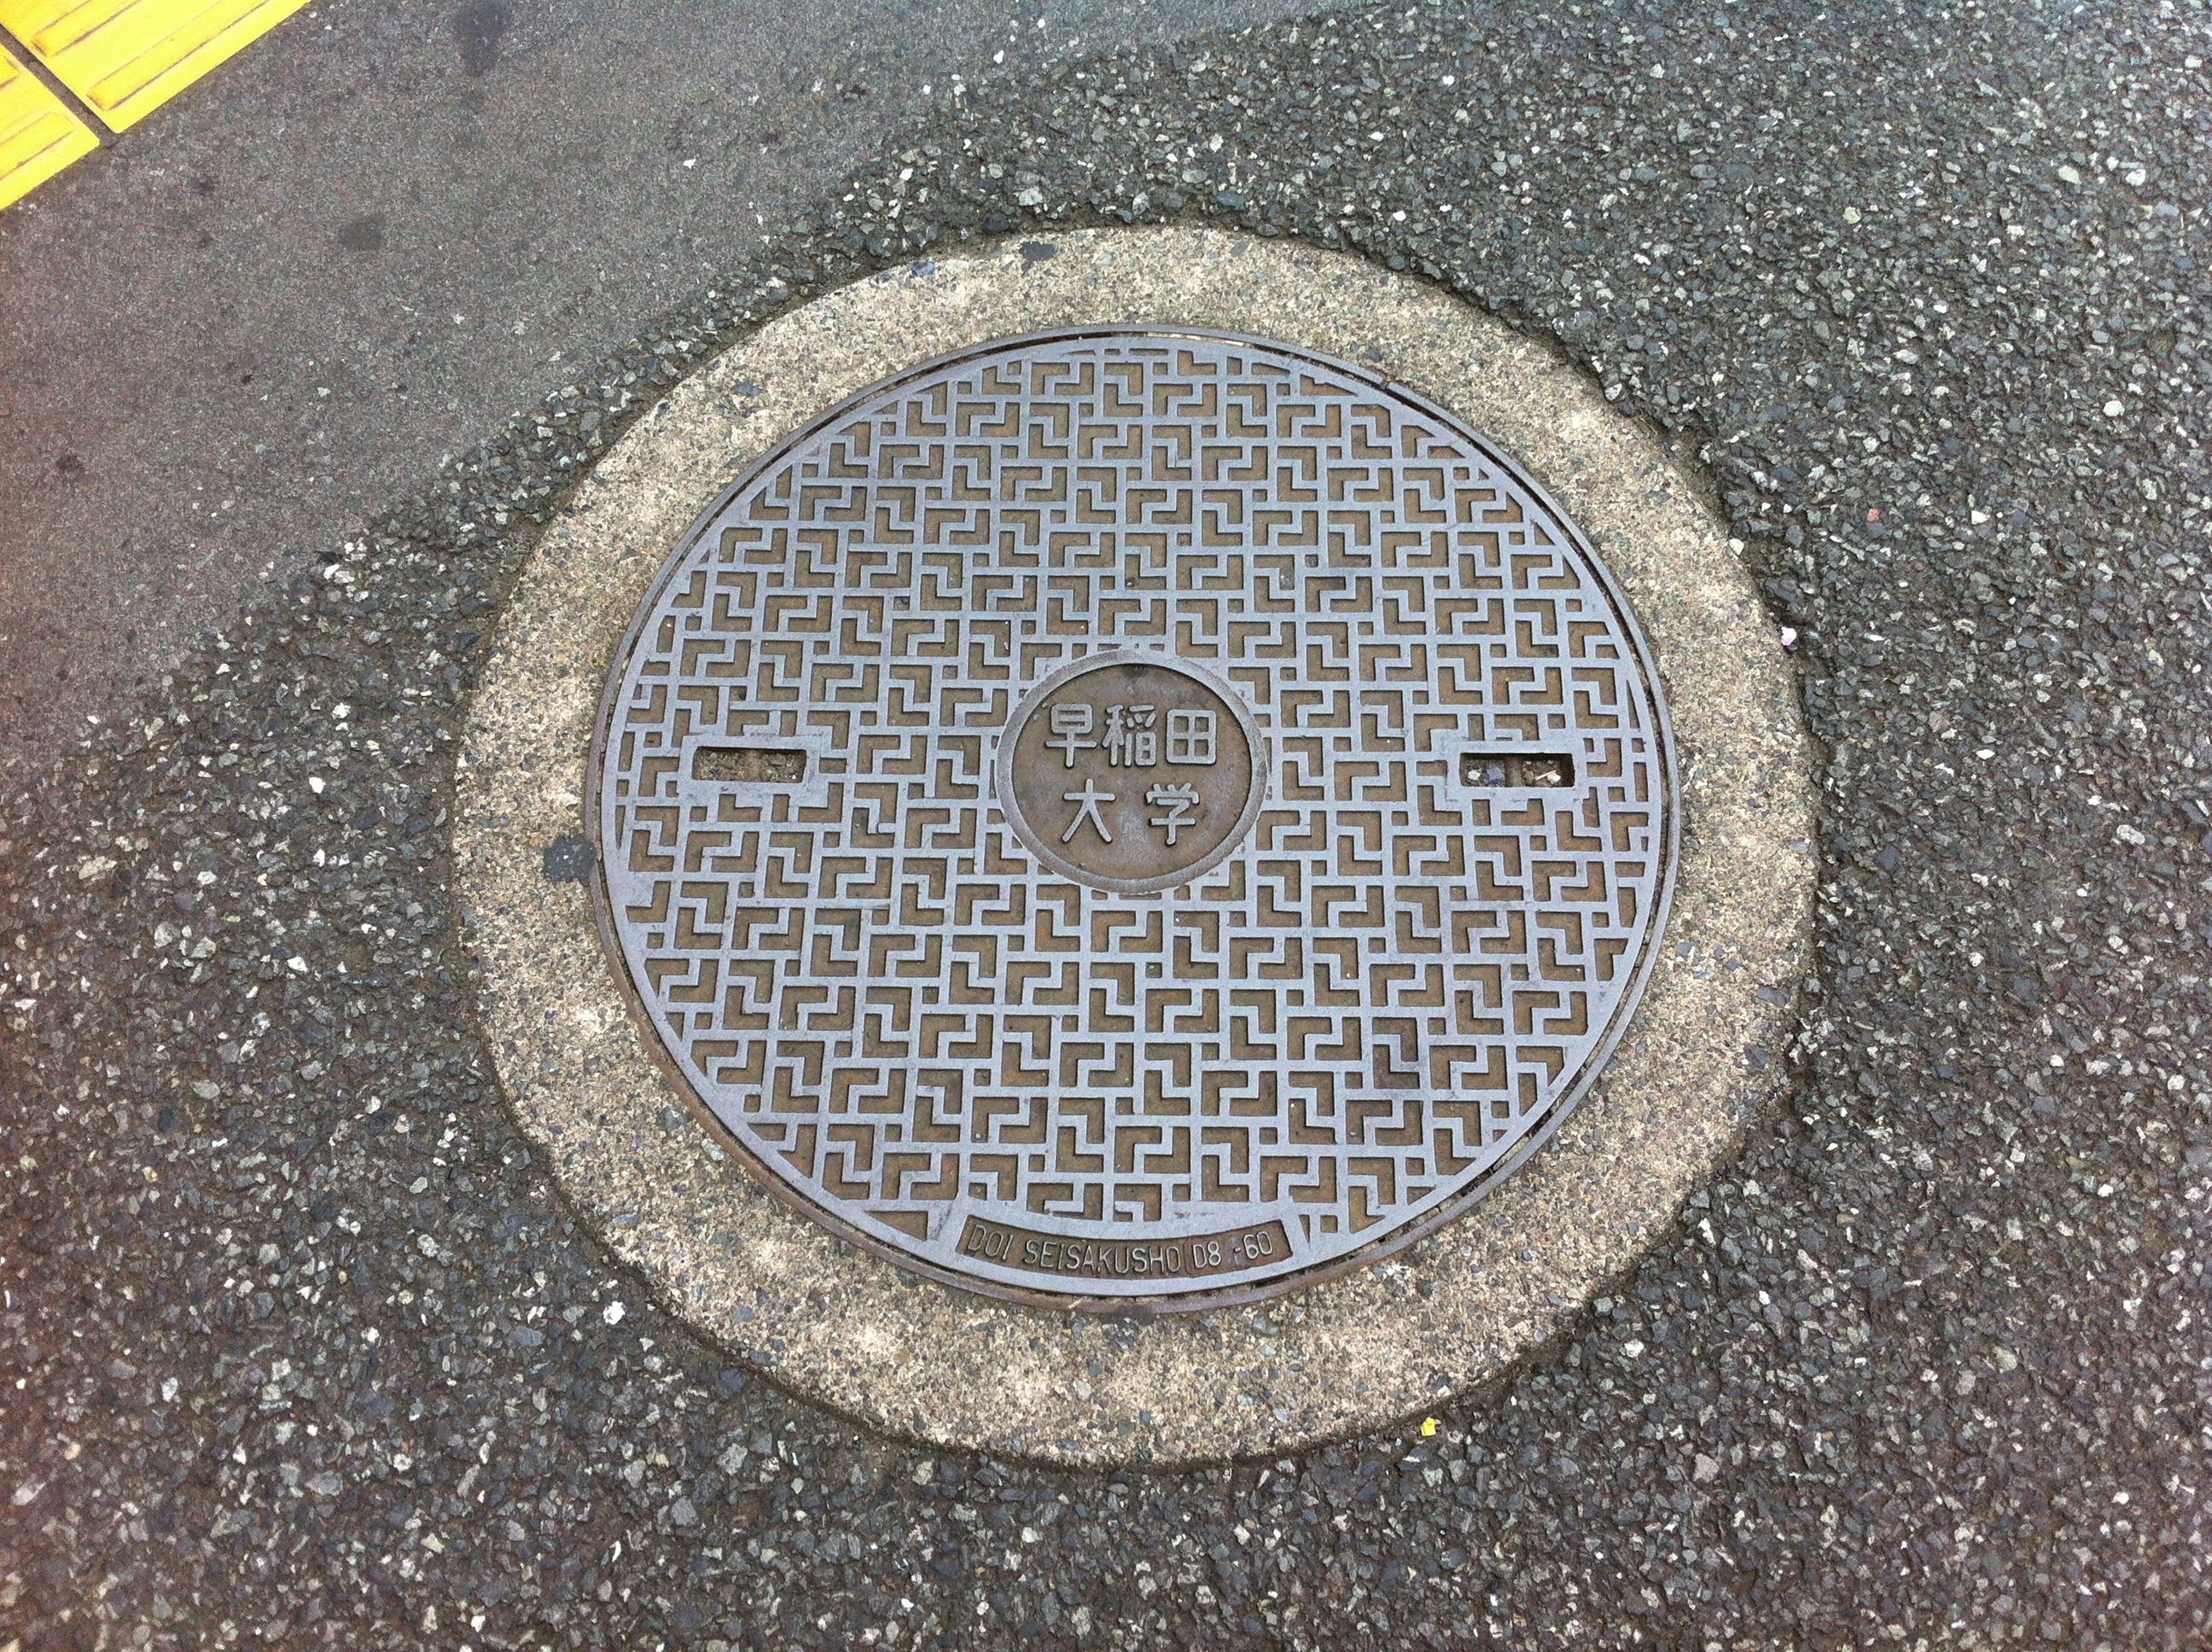 Manhole at Taisho University